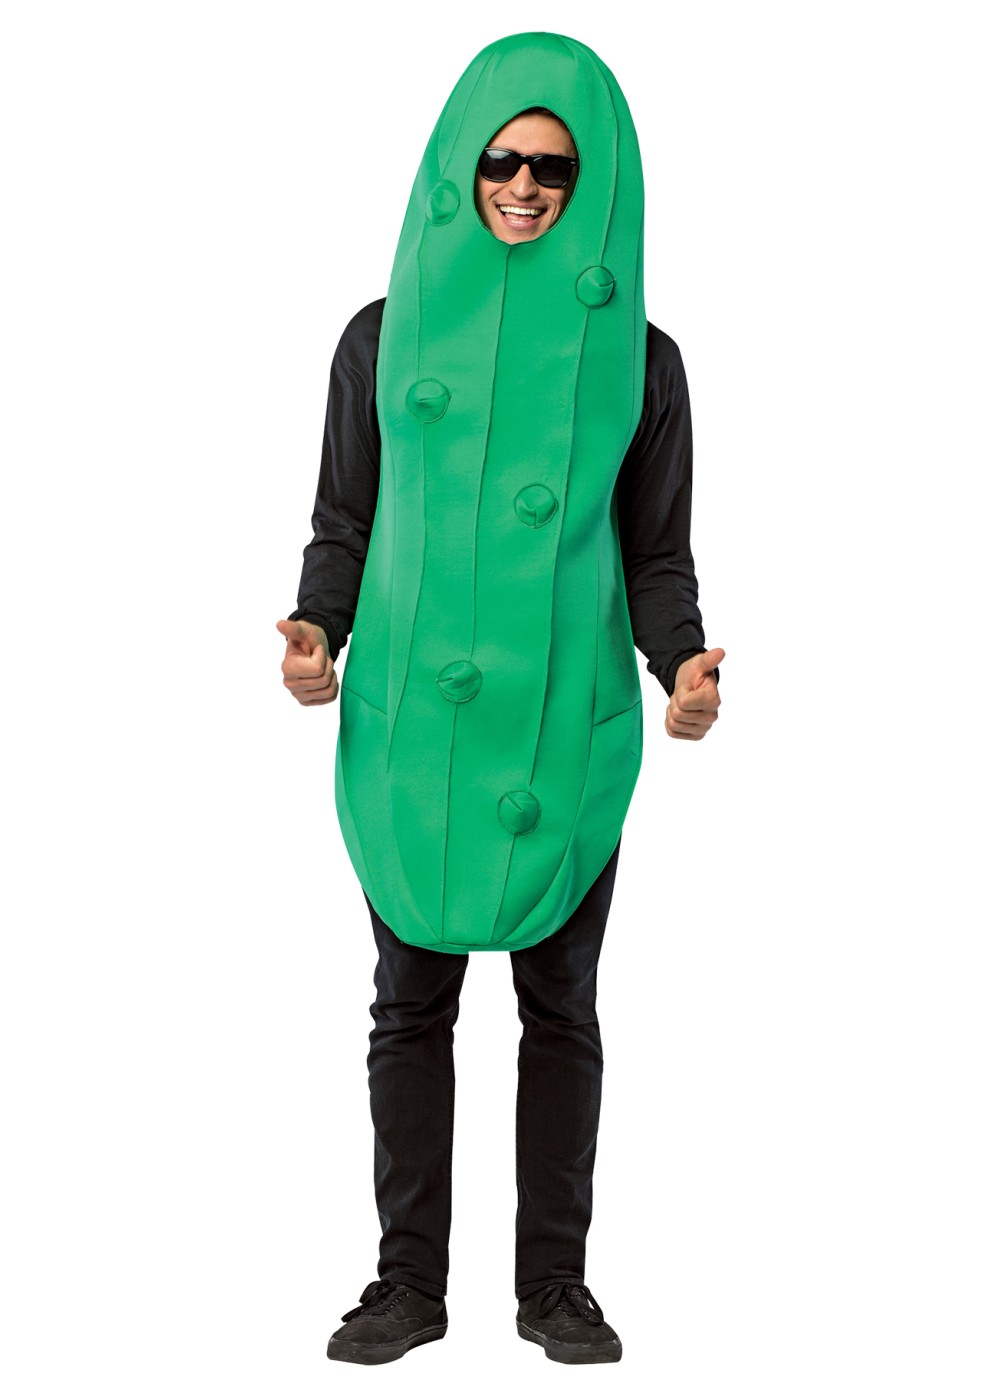 Pickle Costume